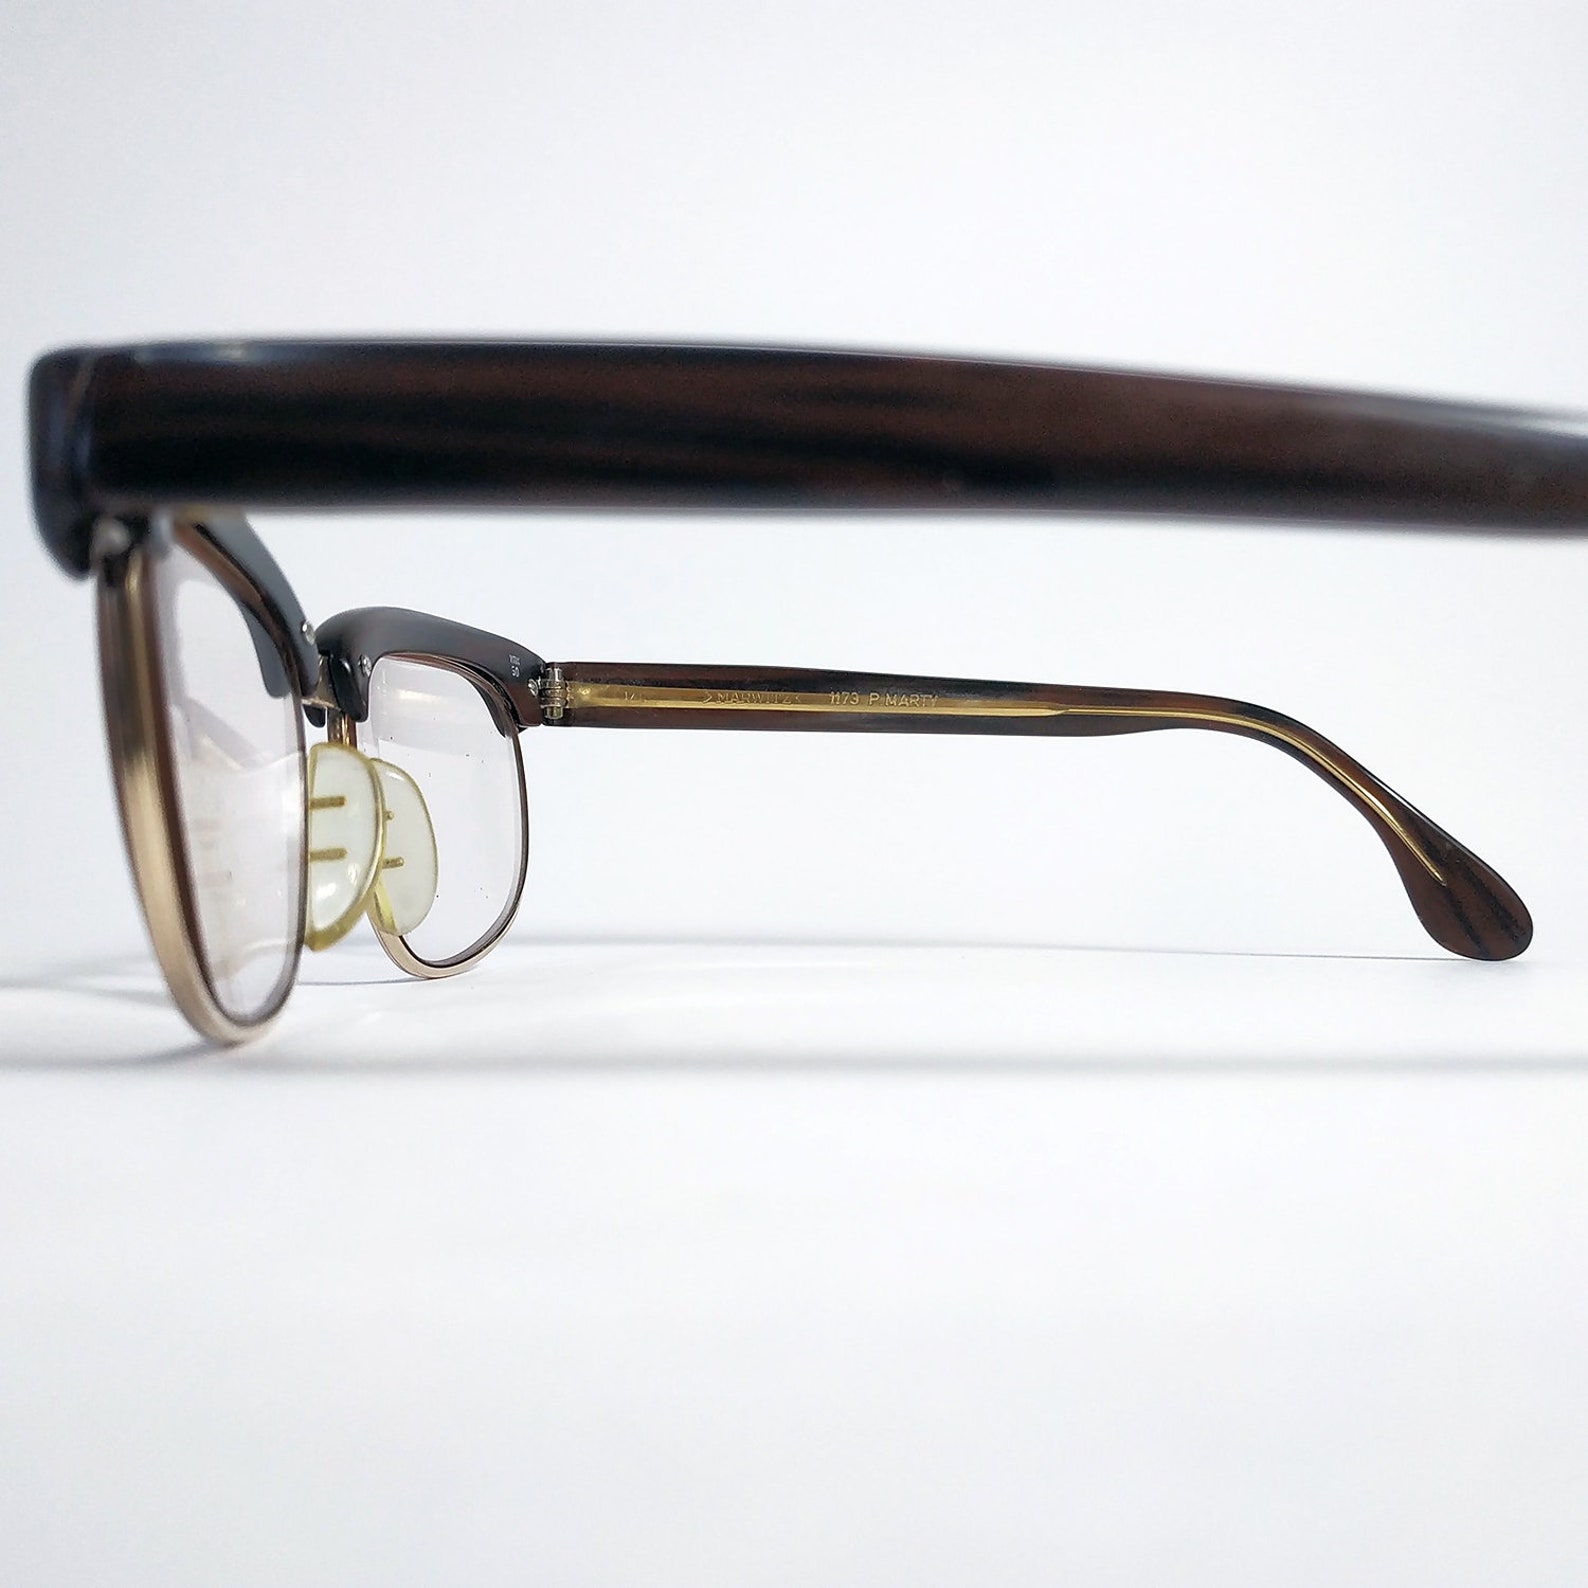 MARWITZ Eyewear 1173 P.MARTY Optima Gold Plated. Vintage Glasses Frame ...